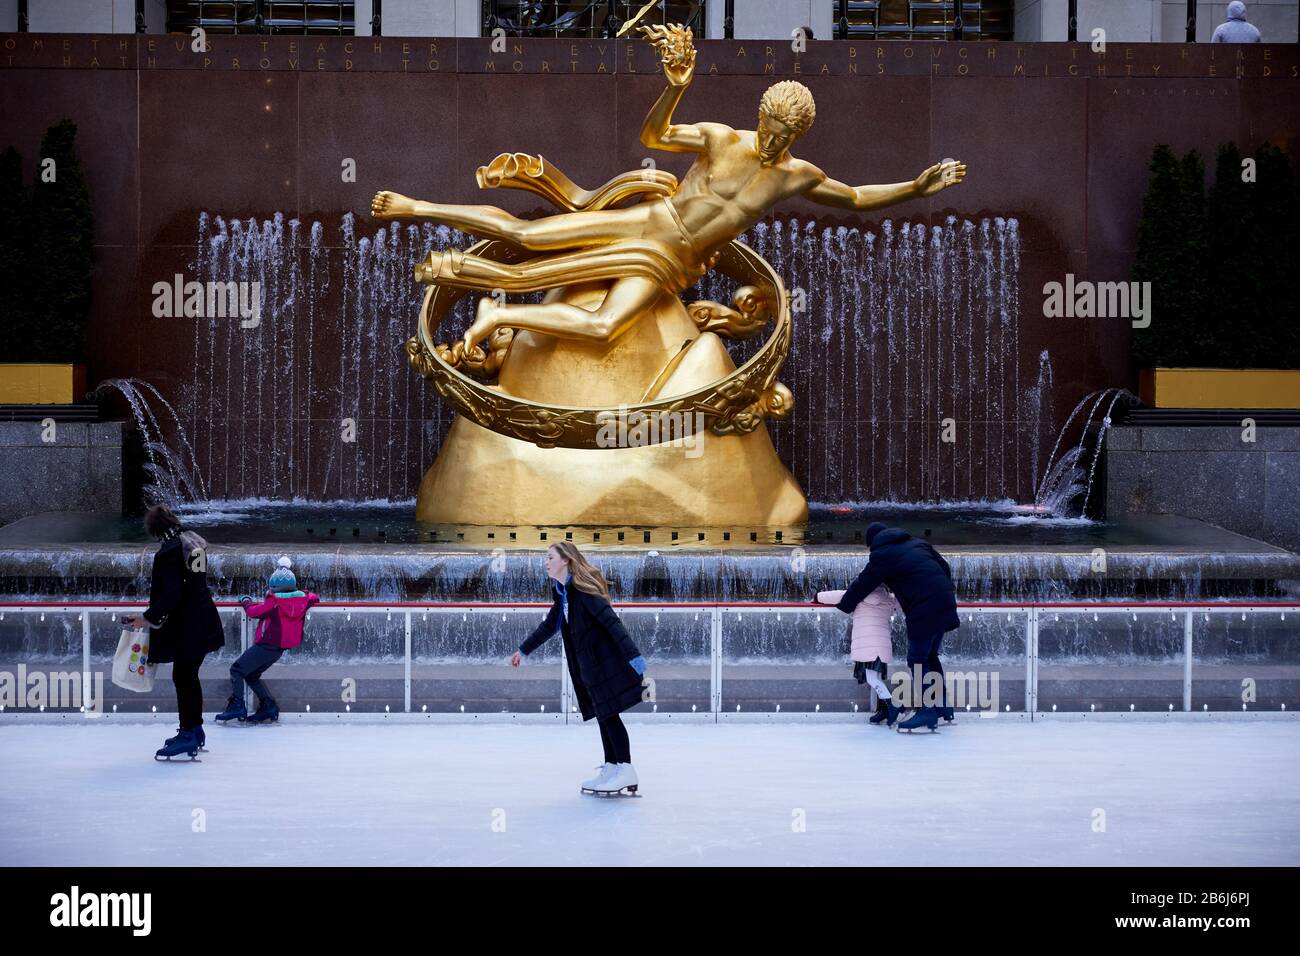 New York City Manhattan Prometheus 1934 oro dorato, scultura in bronzo fuso di Paul Manship, situato Lower plaza pista di ghiaccio Rockefeller Center Foto Stock